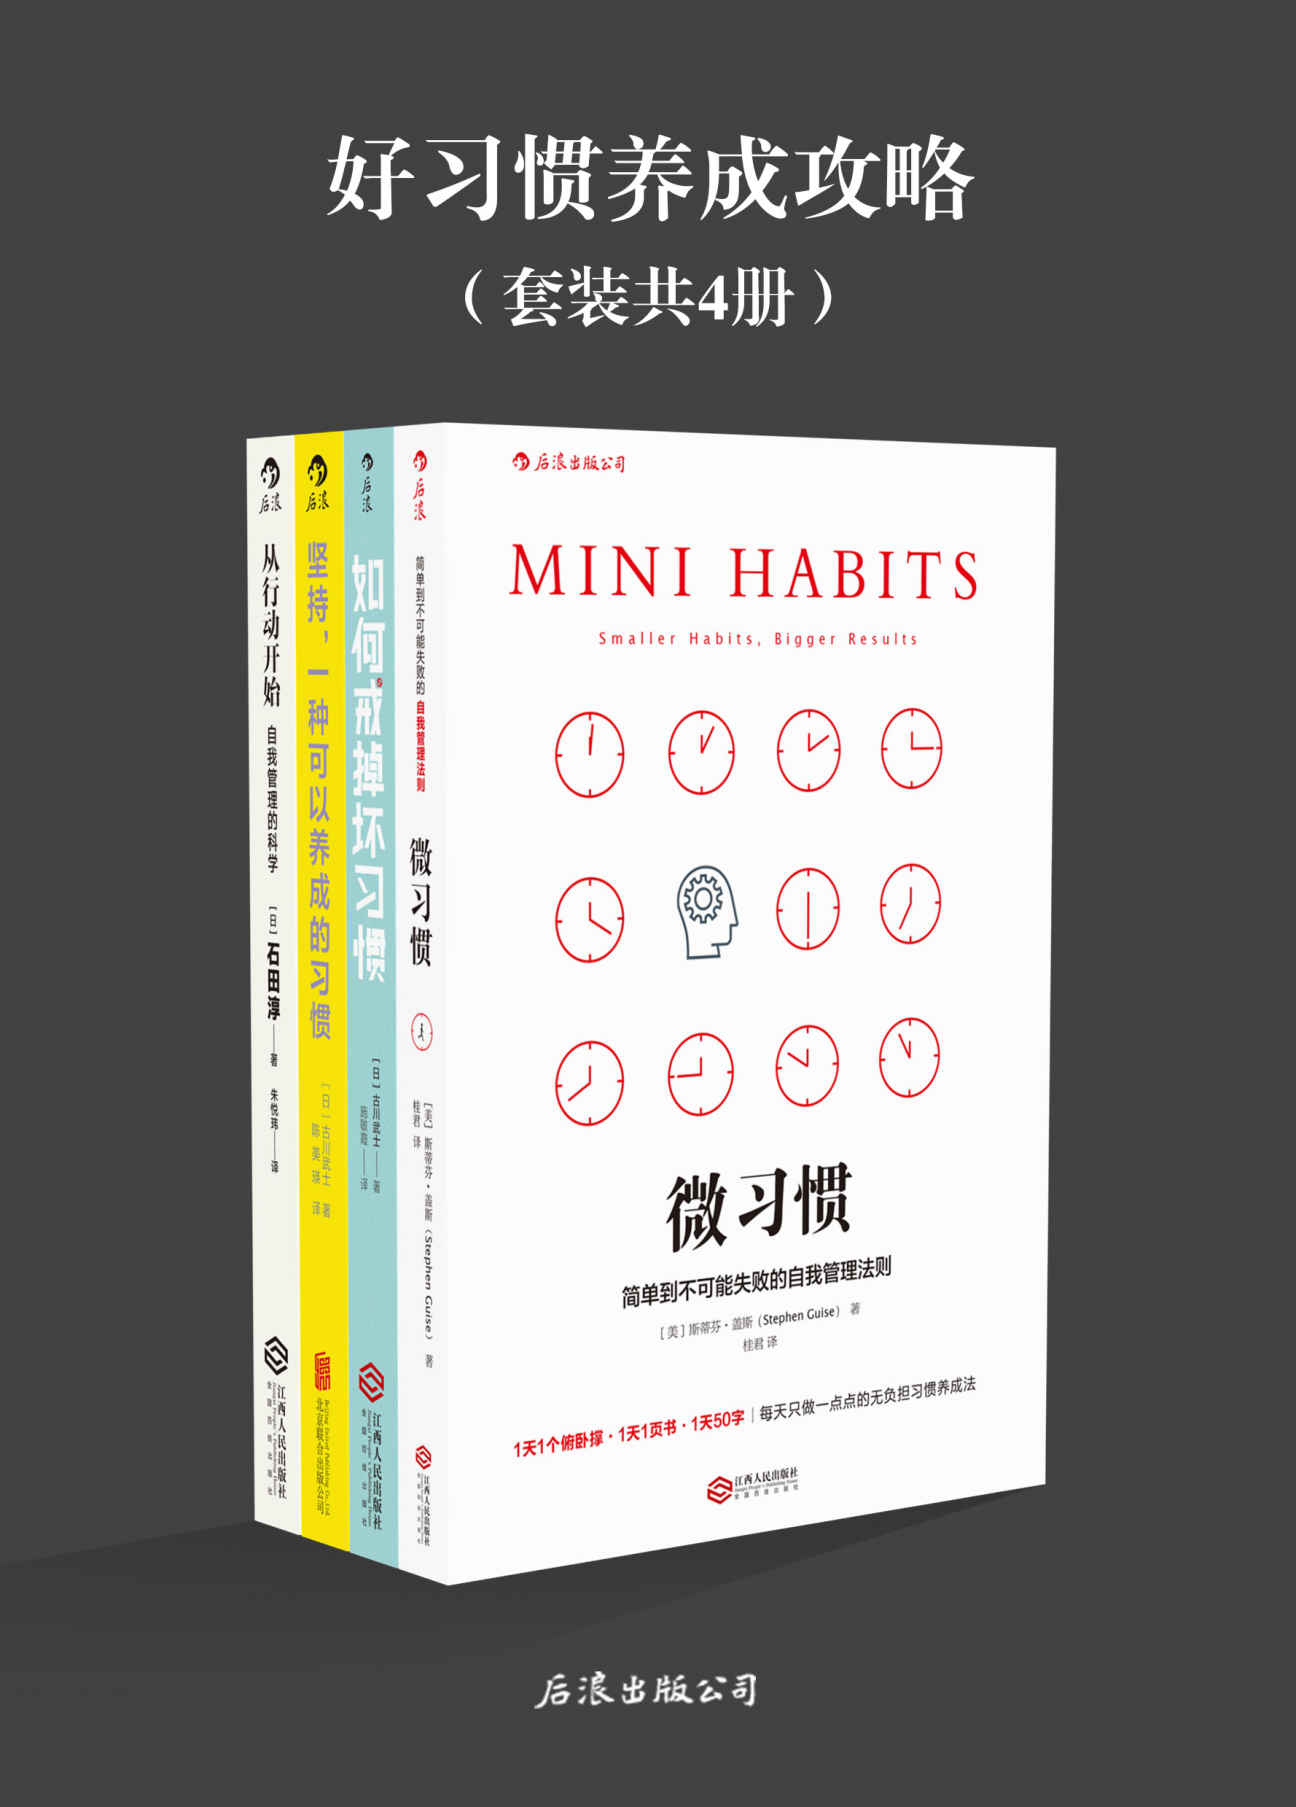 vv（《微习惯》《如何戒掉坏习惯》《坚持，一种可以养成的习惯》《从行动开始:自我管理的科学》套装共4册。）